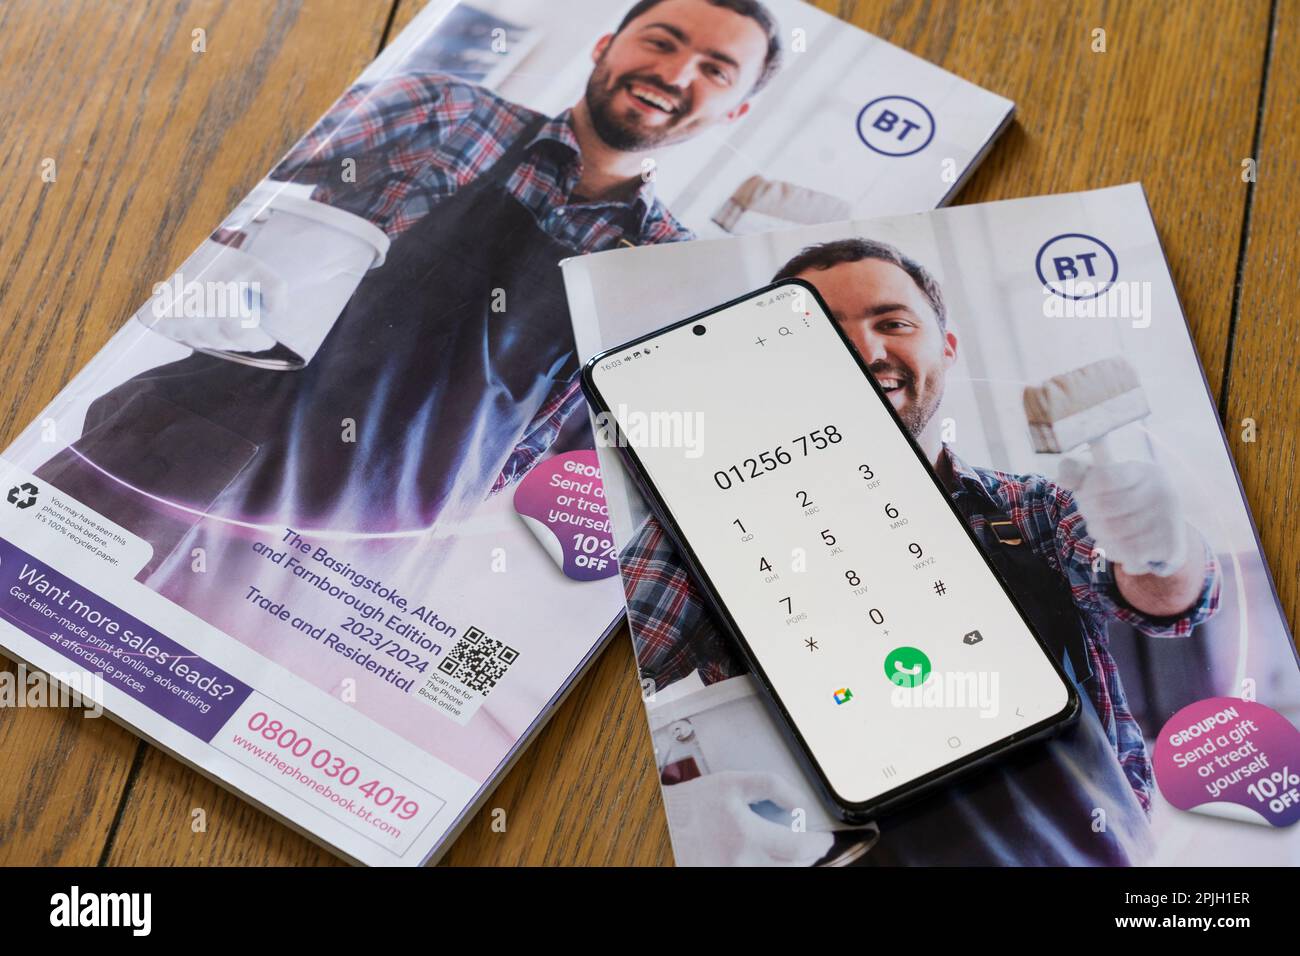 Annuaire téléphonique British Telecom (BT) pour la région de Basingstoke permettant de trouver des coordonnées professionnelles et privées et un téléphone intelligent avec numéro de téléphone. ROYAUME-UNI Banque D'Images